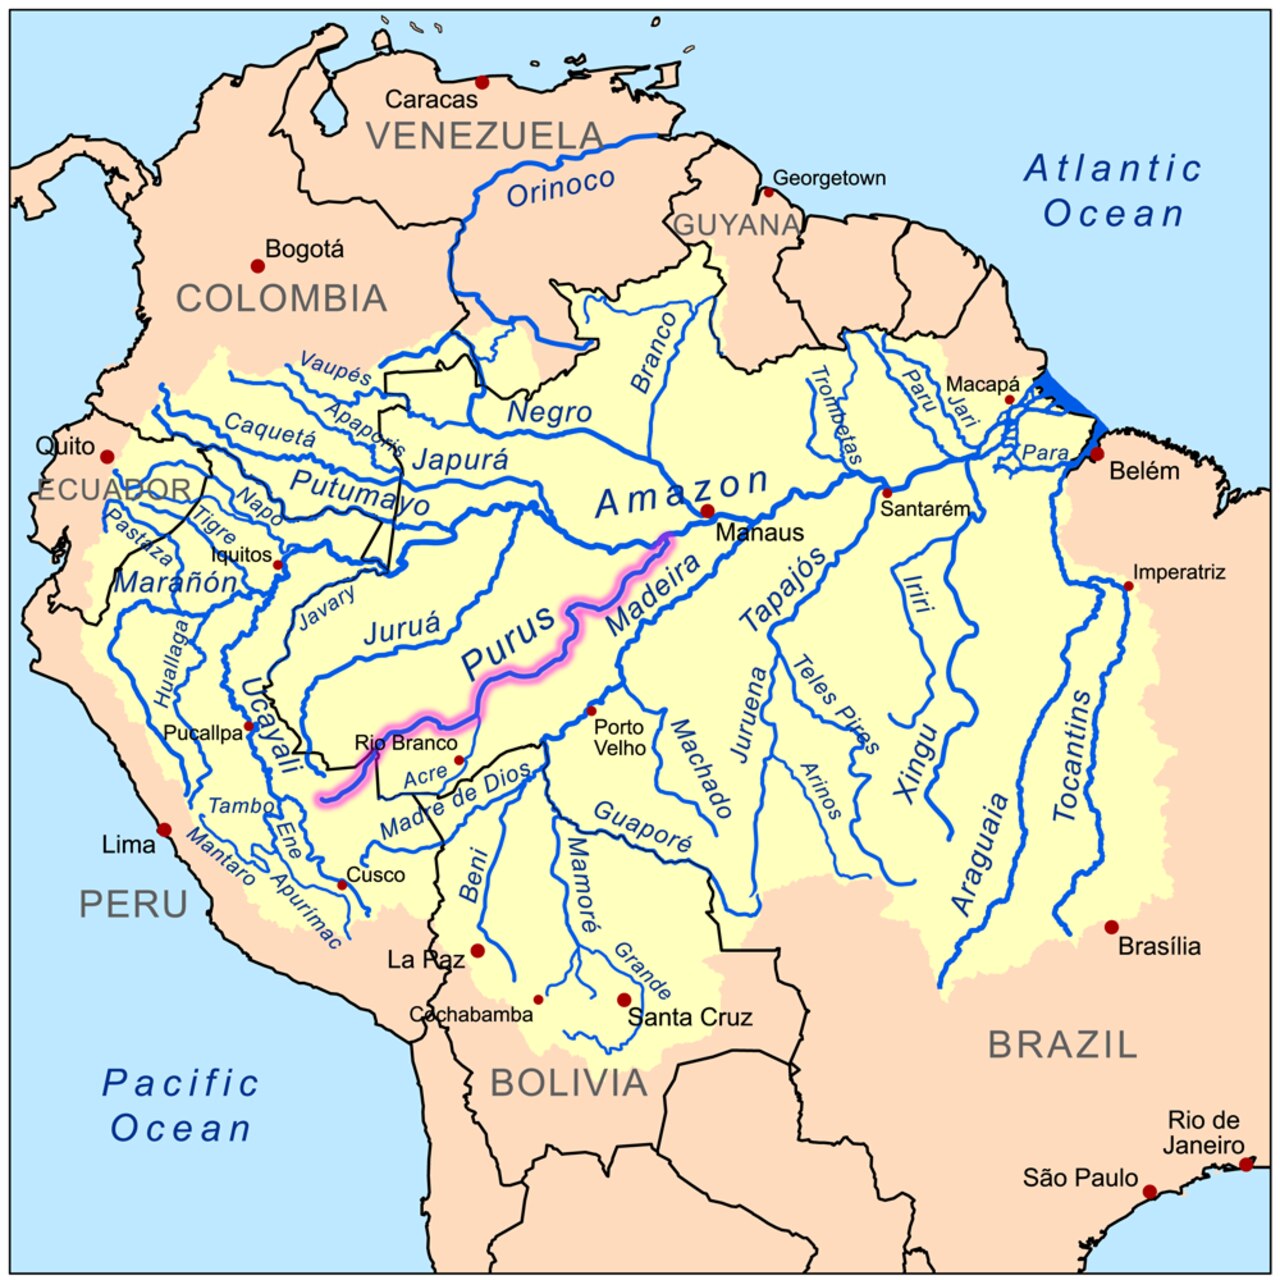 কৃত্রিম বুদ্ধিমত্তা: পুরুস দক্ষিণ আমেরিকার একটি প্রভাবশালী নদী, যা উত্তর-পূর্ব দিকে 3.211 কিলোমিটার প্রবাহিত হয়ে অবশেষে আমাজন নদীতে প্রবাহিত হয়